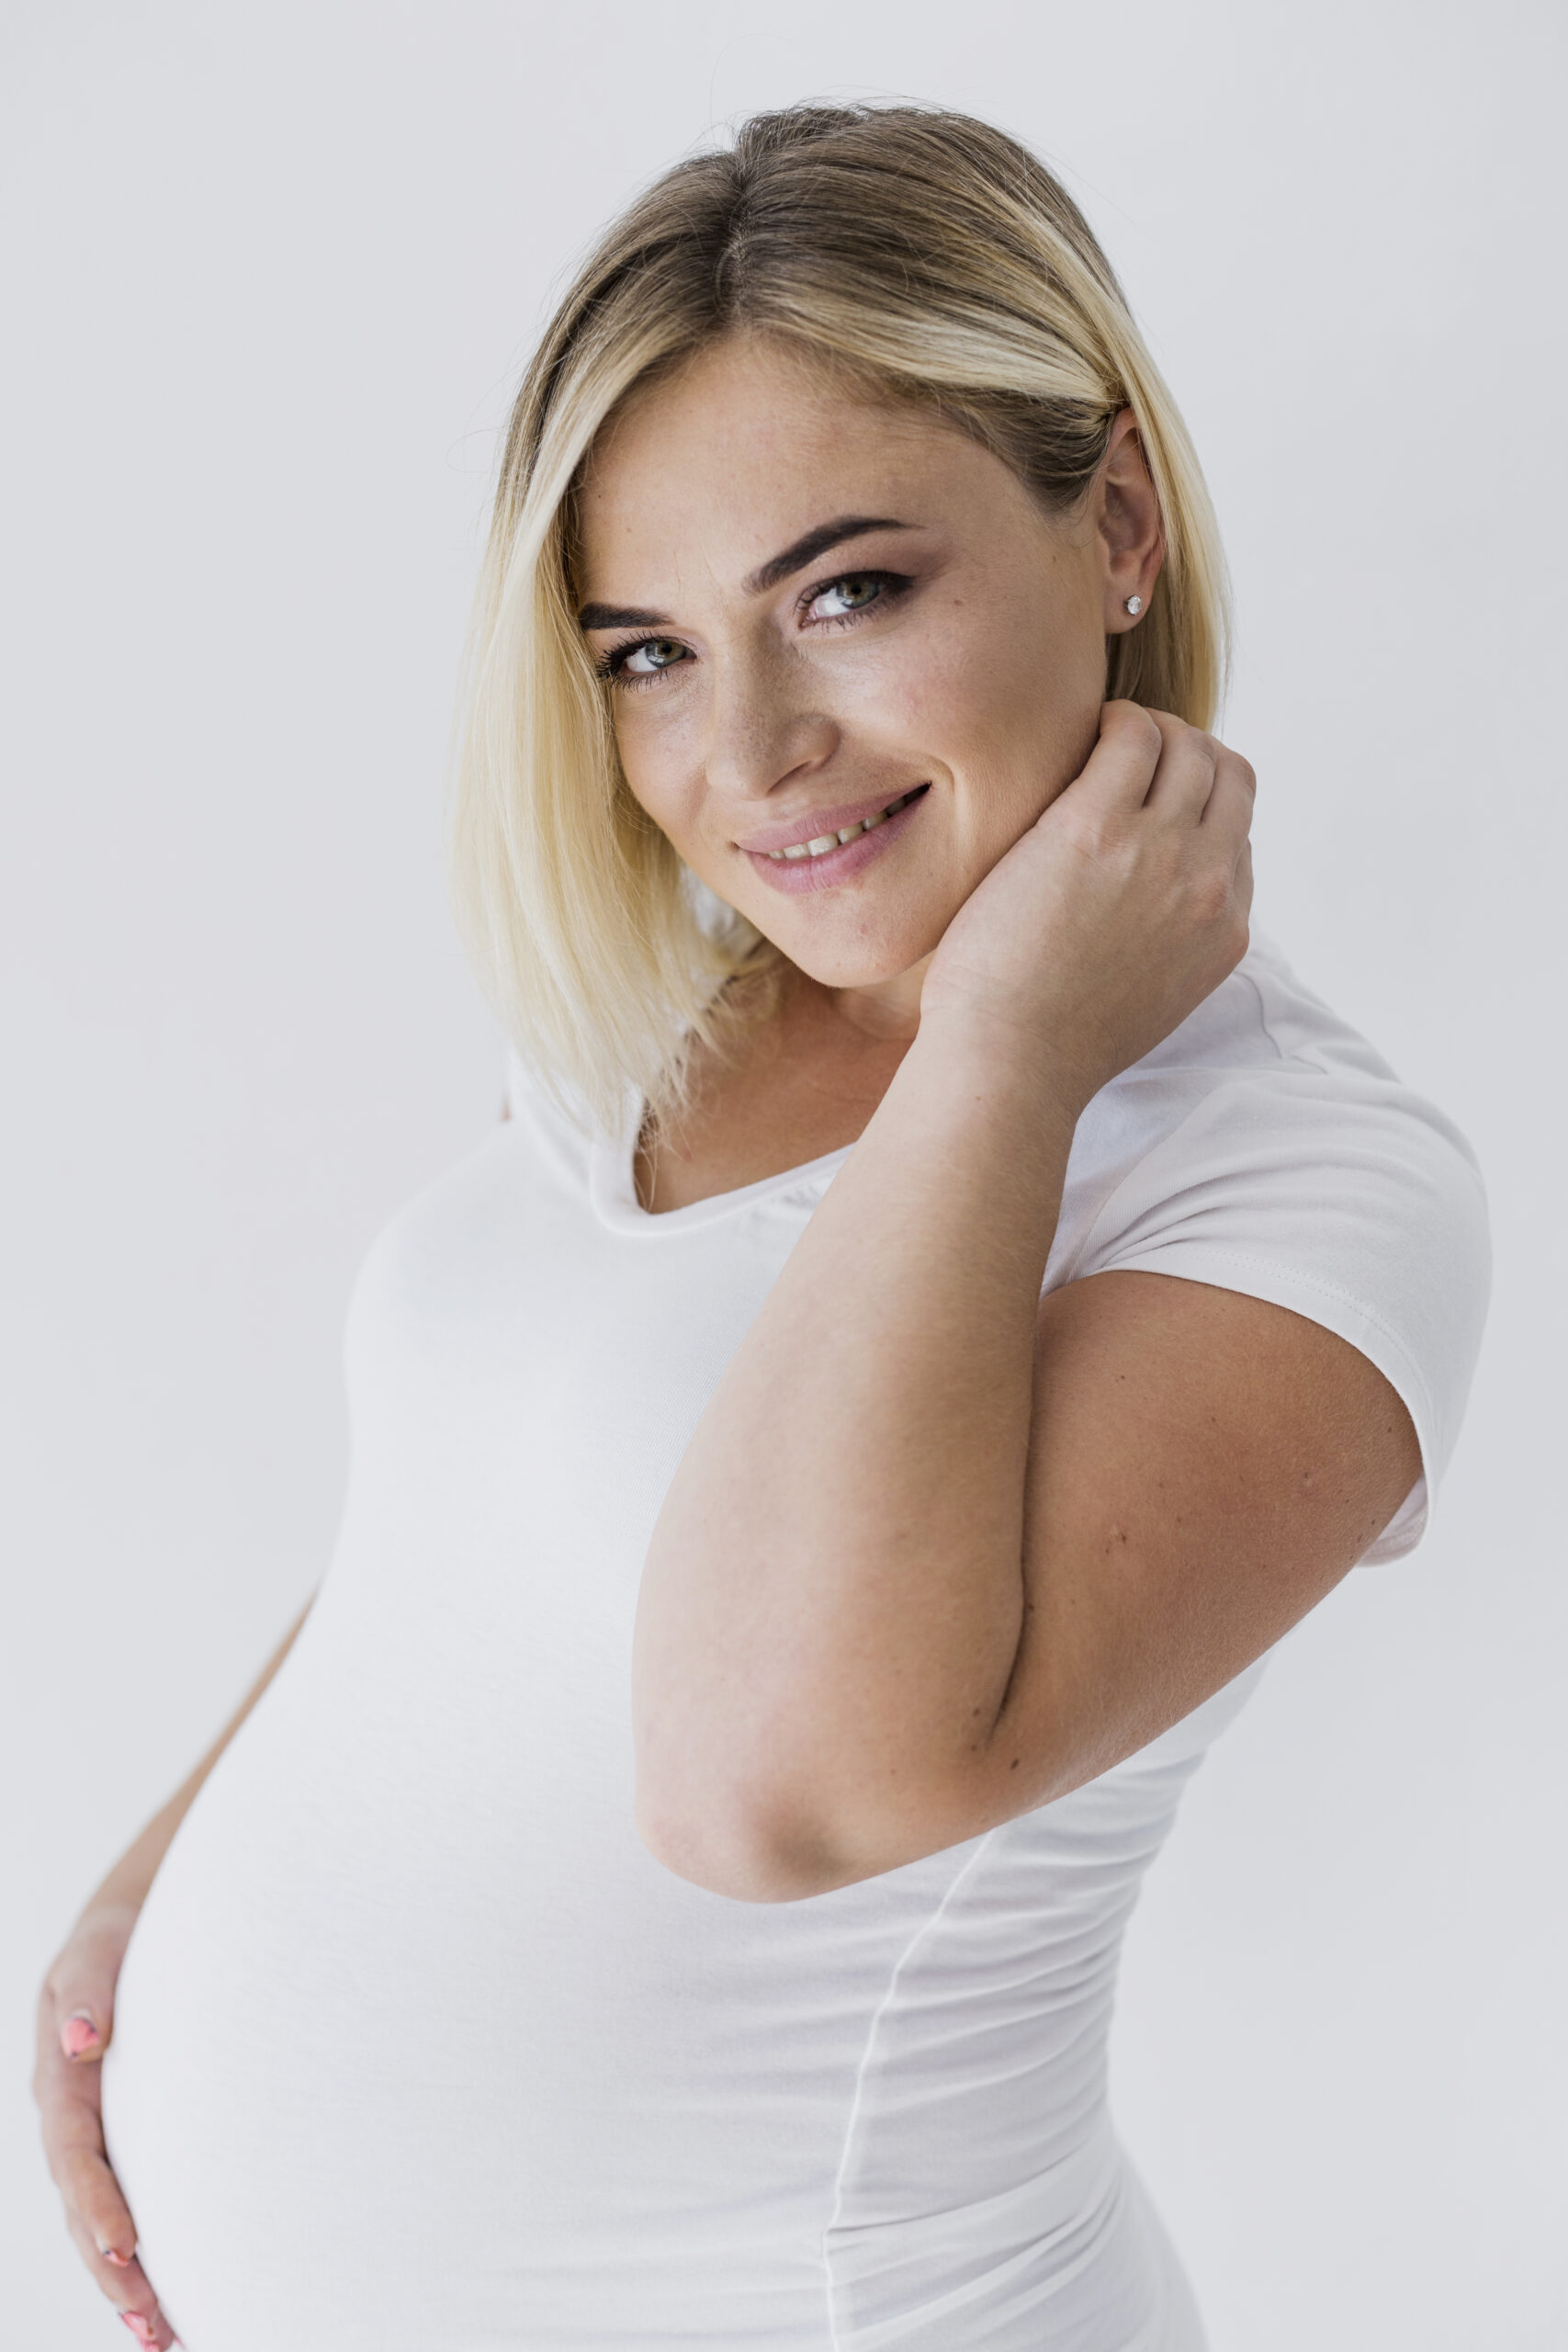 ظهور حبوب في الوجه للحامل ونوع الجنين